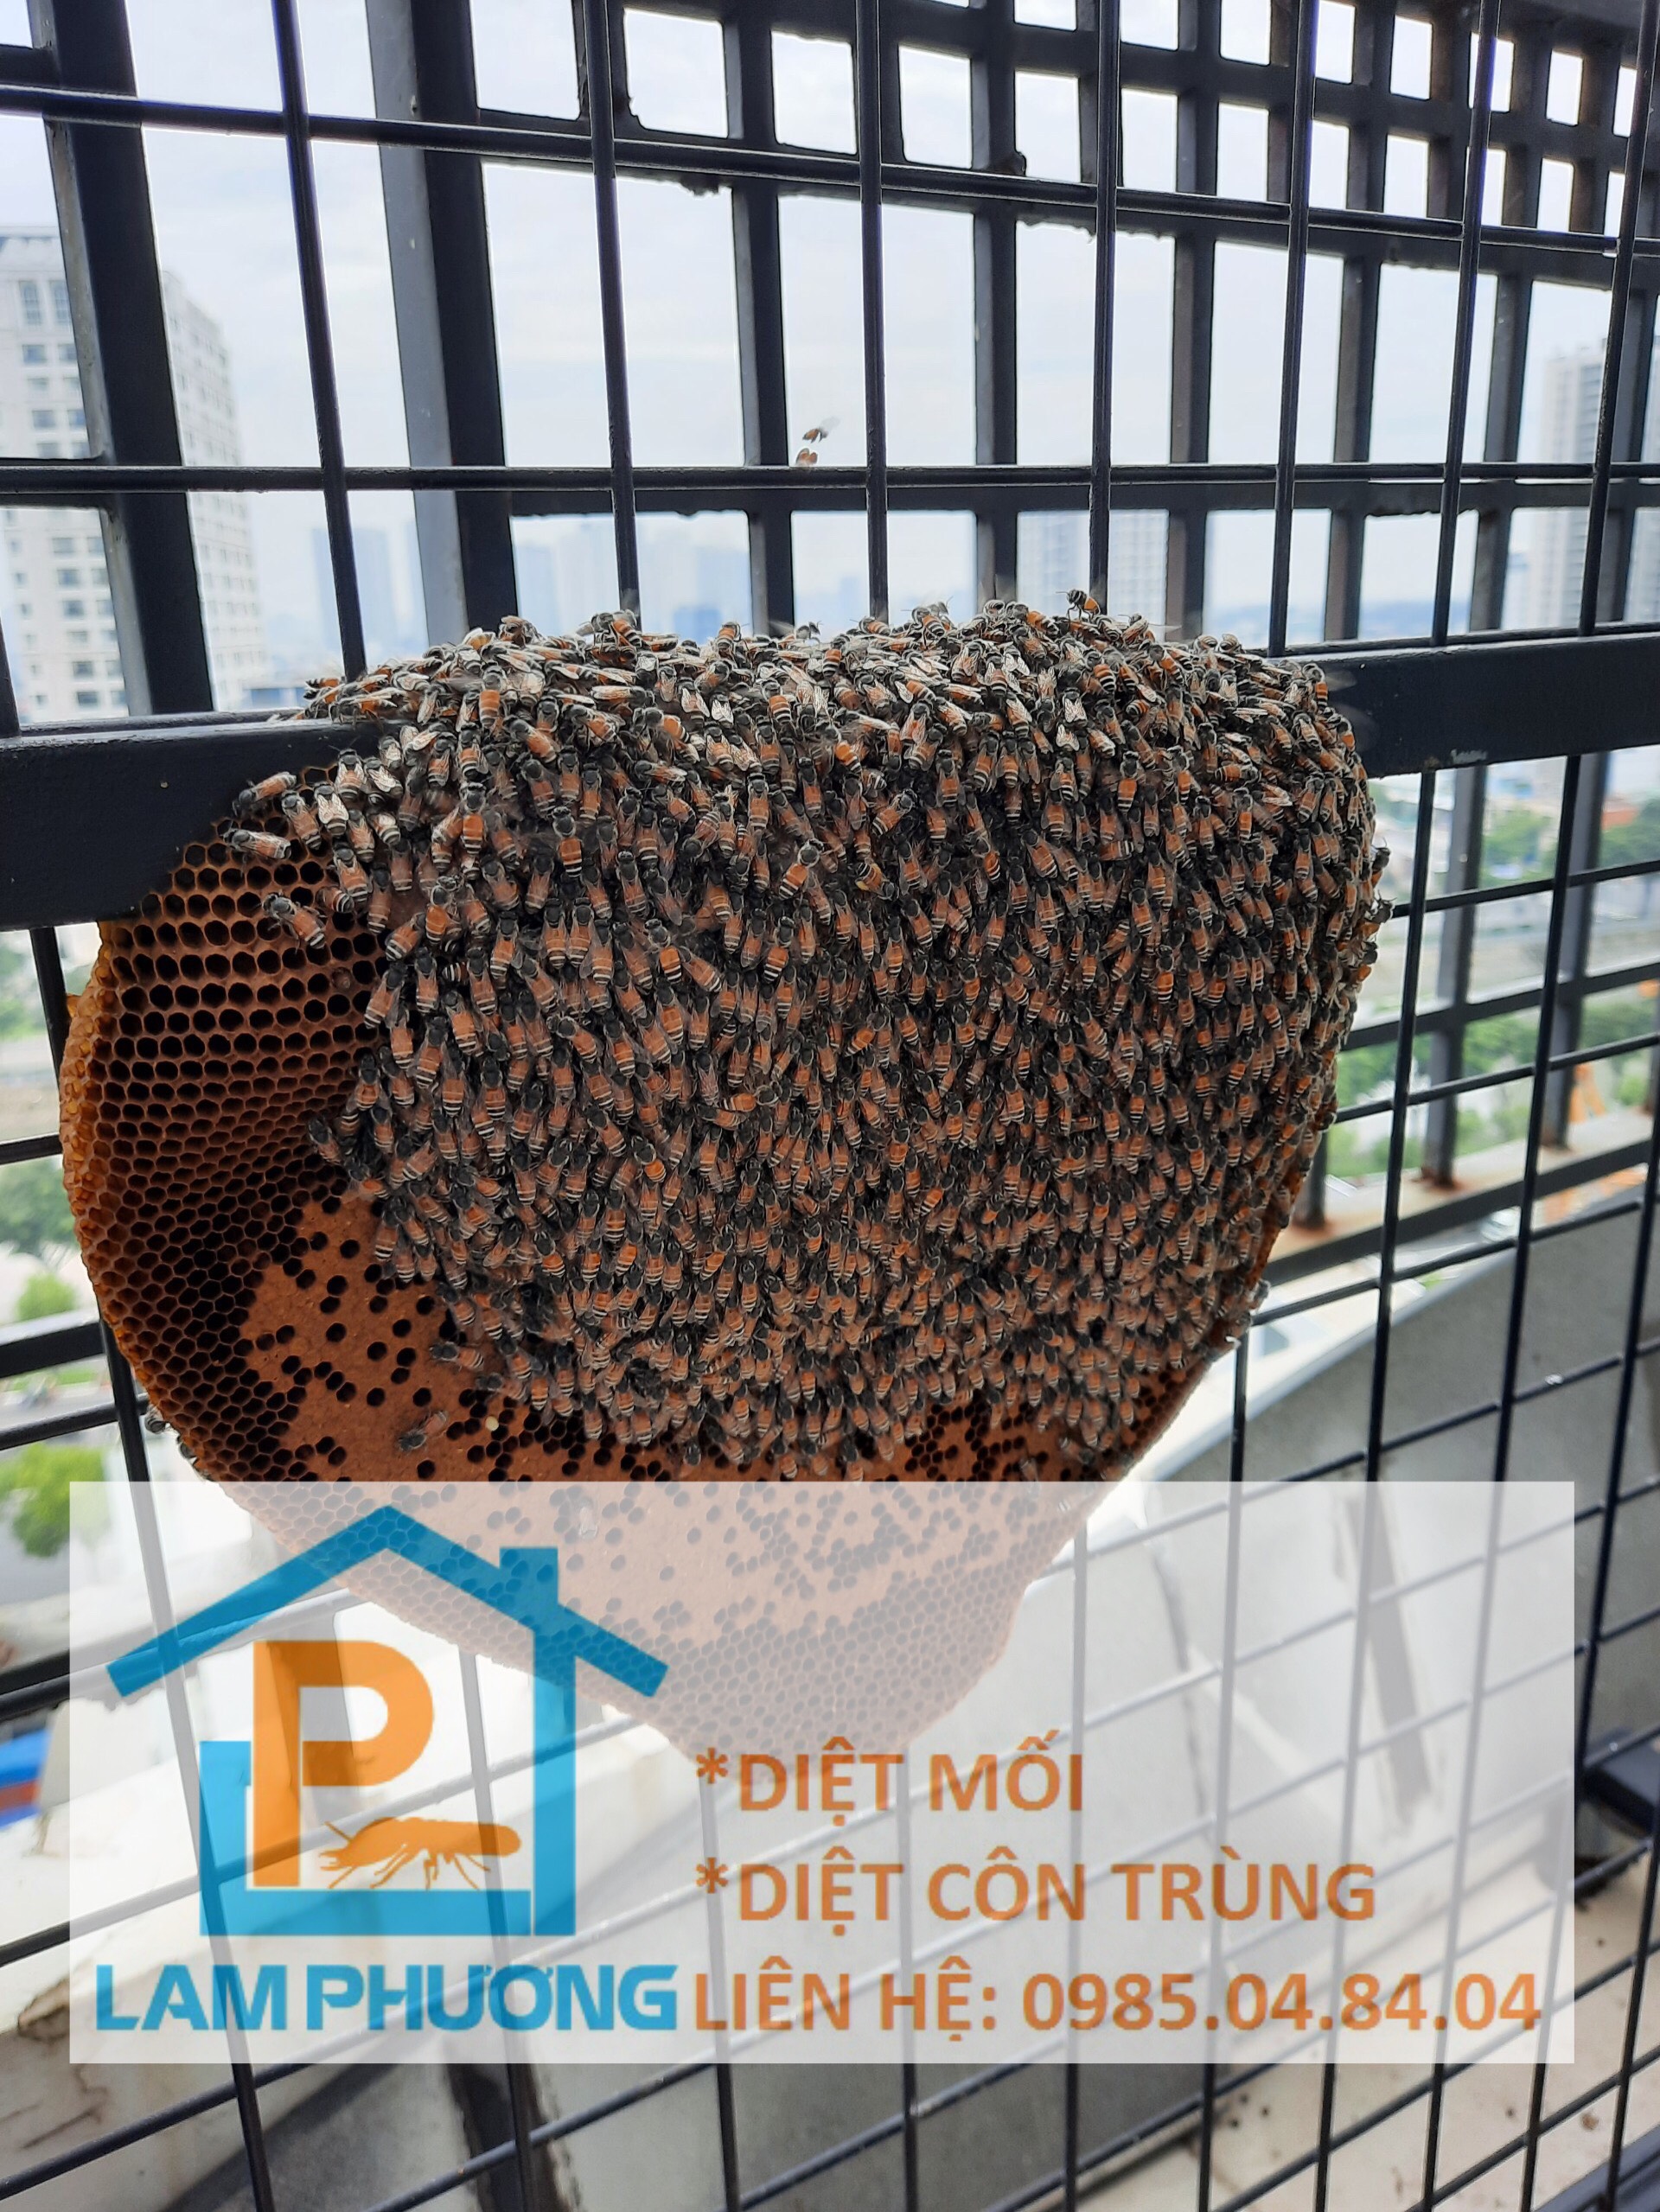 Bạn đang lo lắng vì khu vườn nhà bạn bị đầy những tổ ong phức tạp? Hãy đến với dịch vụ bắt ong chuyên nghiệp của chúng tôi. Với đội ngũ nhân viên tay nghề cao, chúng tôi cam kết mang lại cho bạn một không gian yên tĩnh và an toàn hơn.